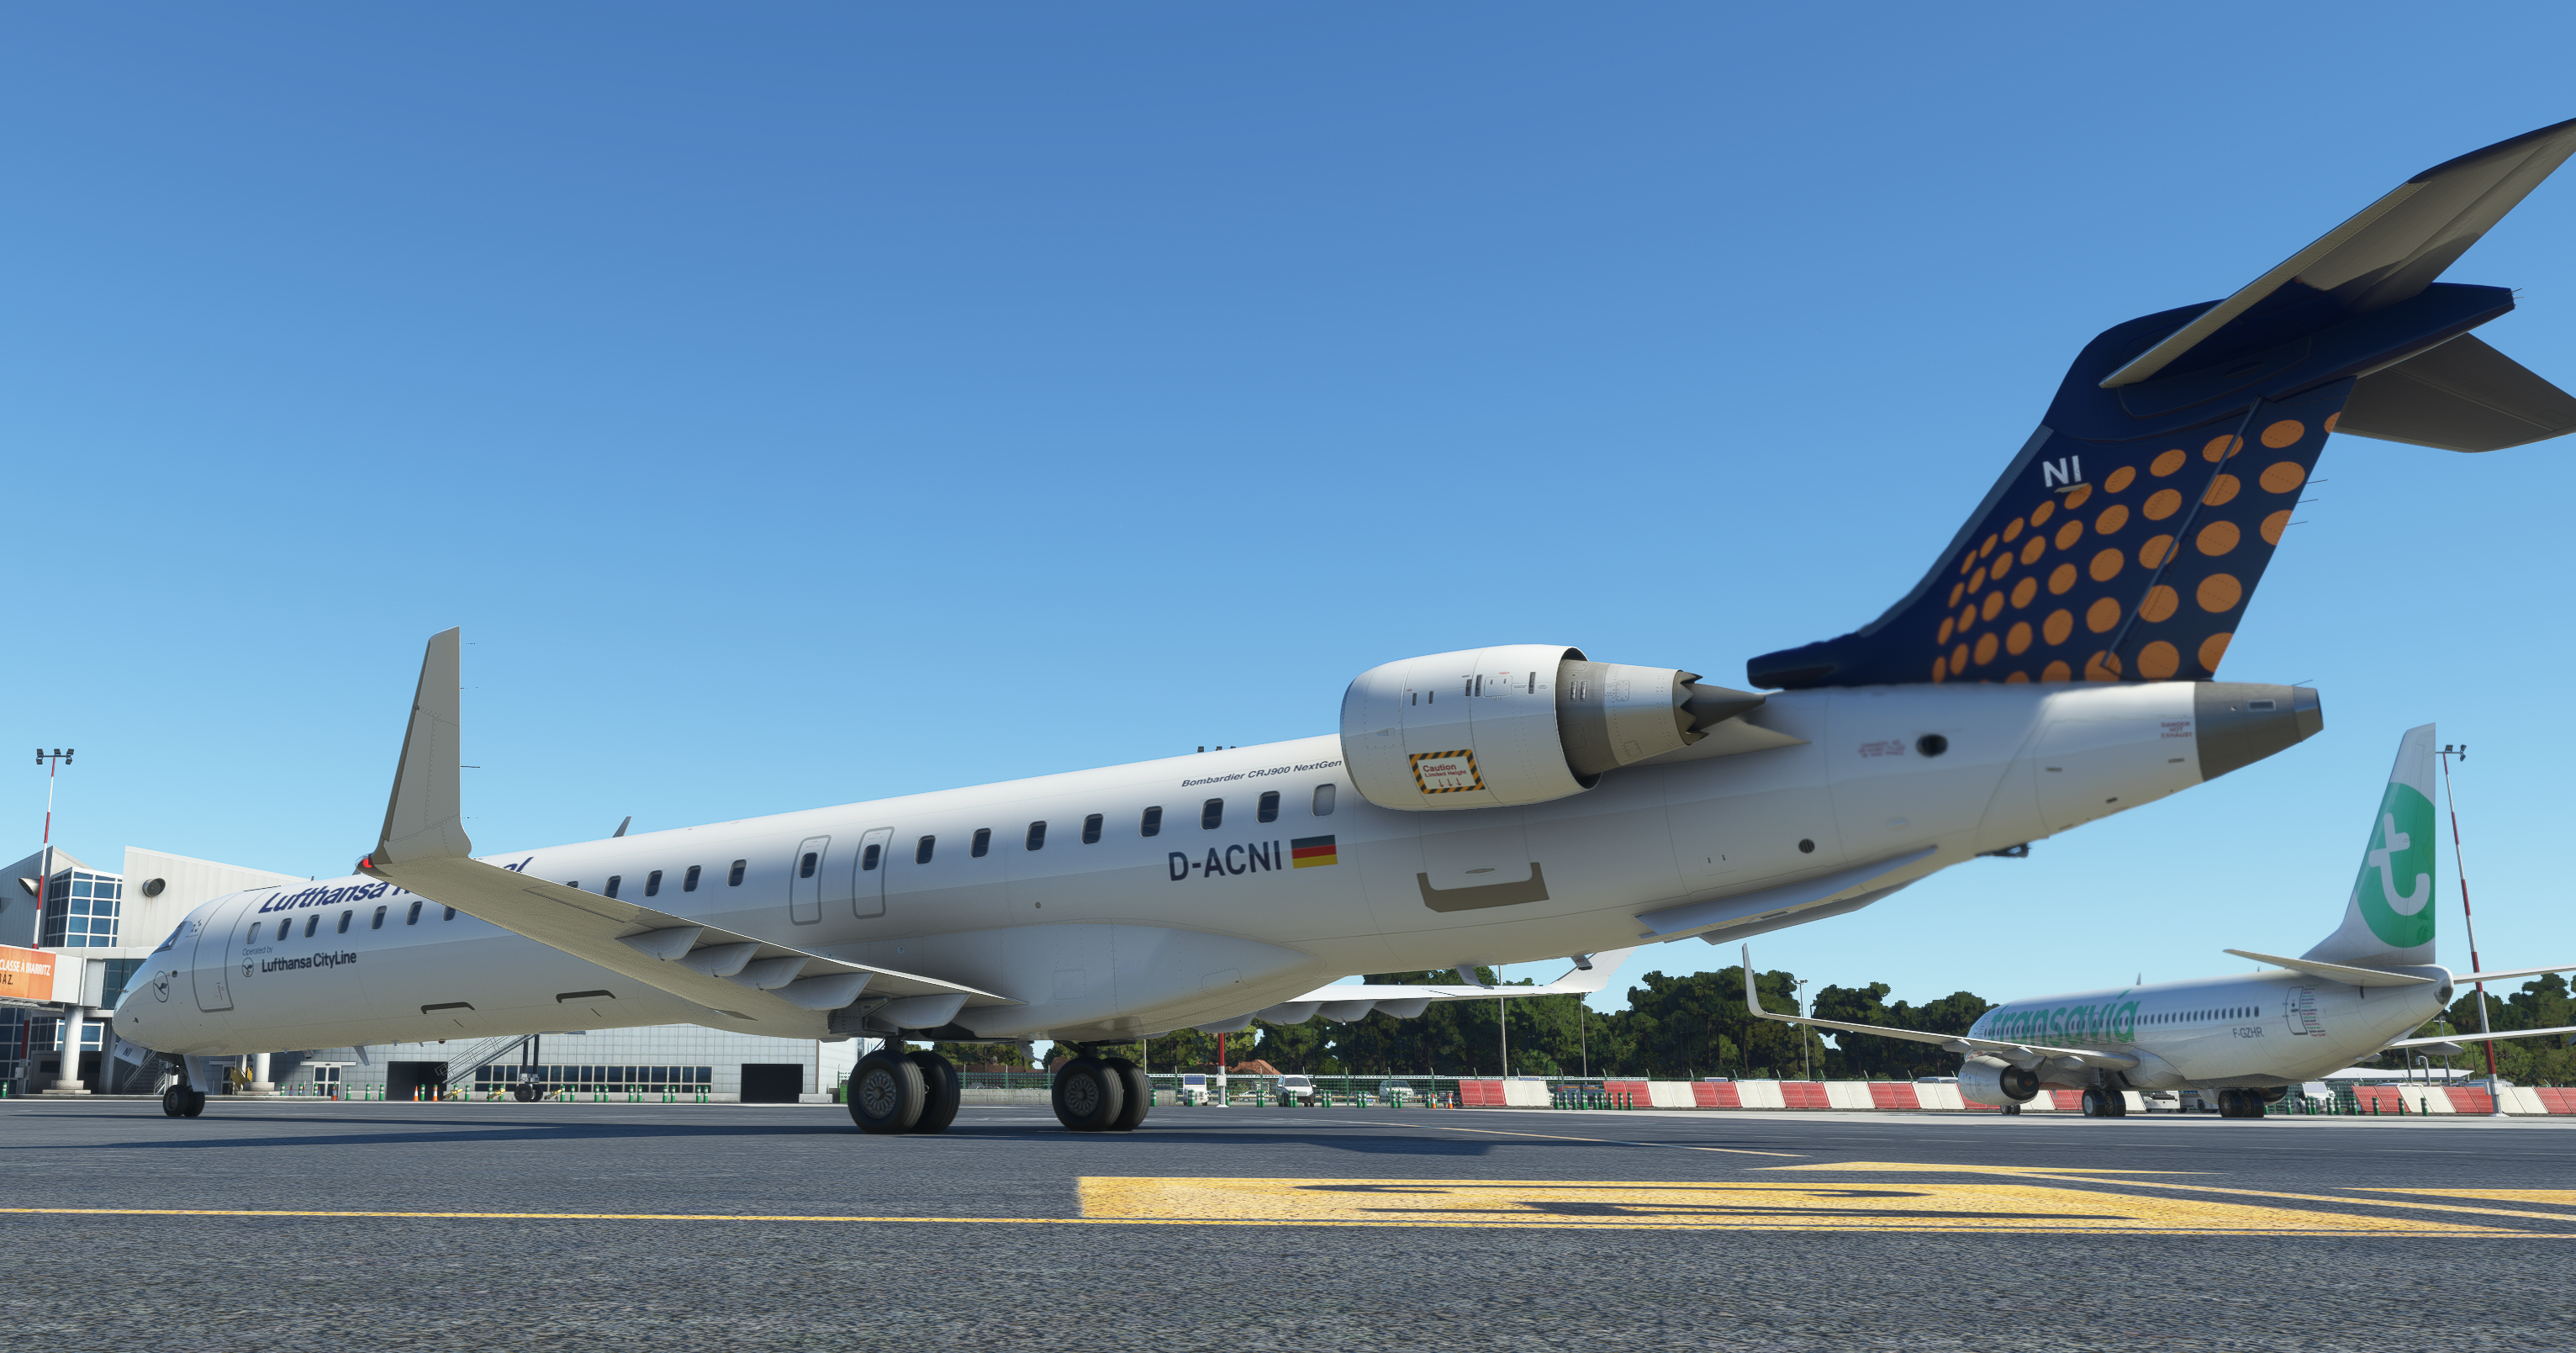 CRJ900 LUFTHANSA REGIONAL- D-ACNI - HIGH QUALITY- MSFS